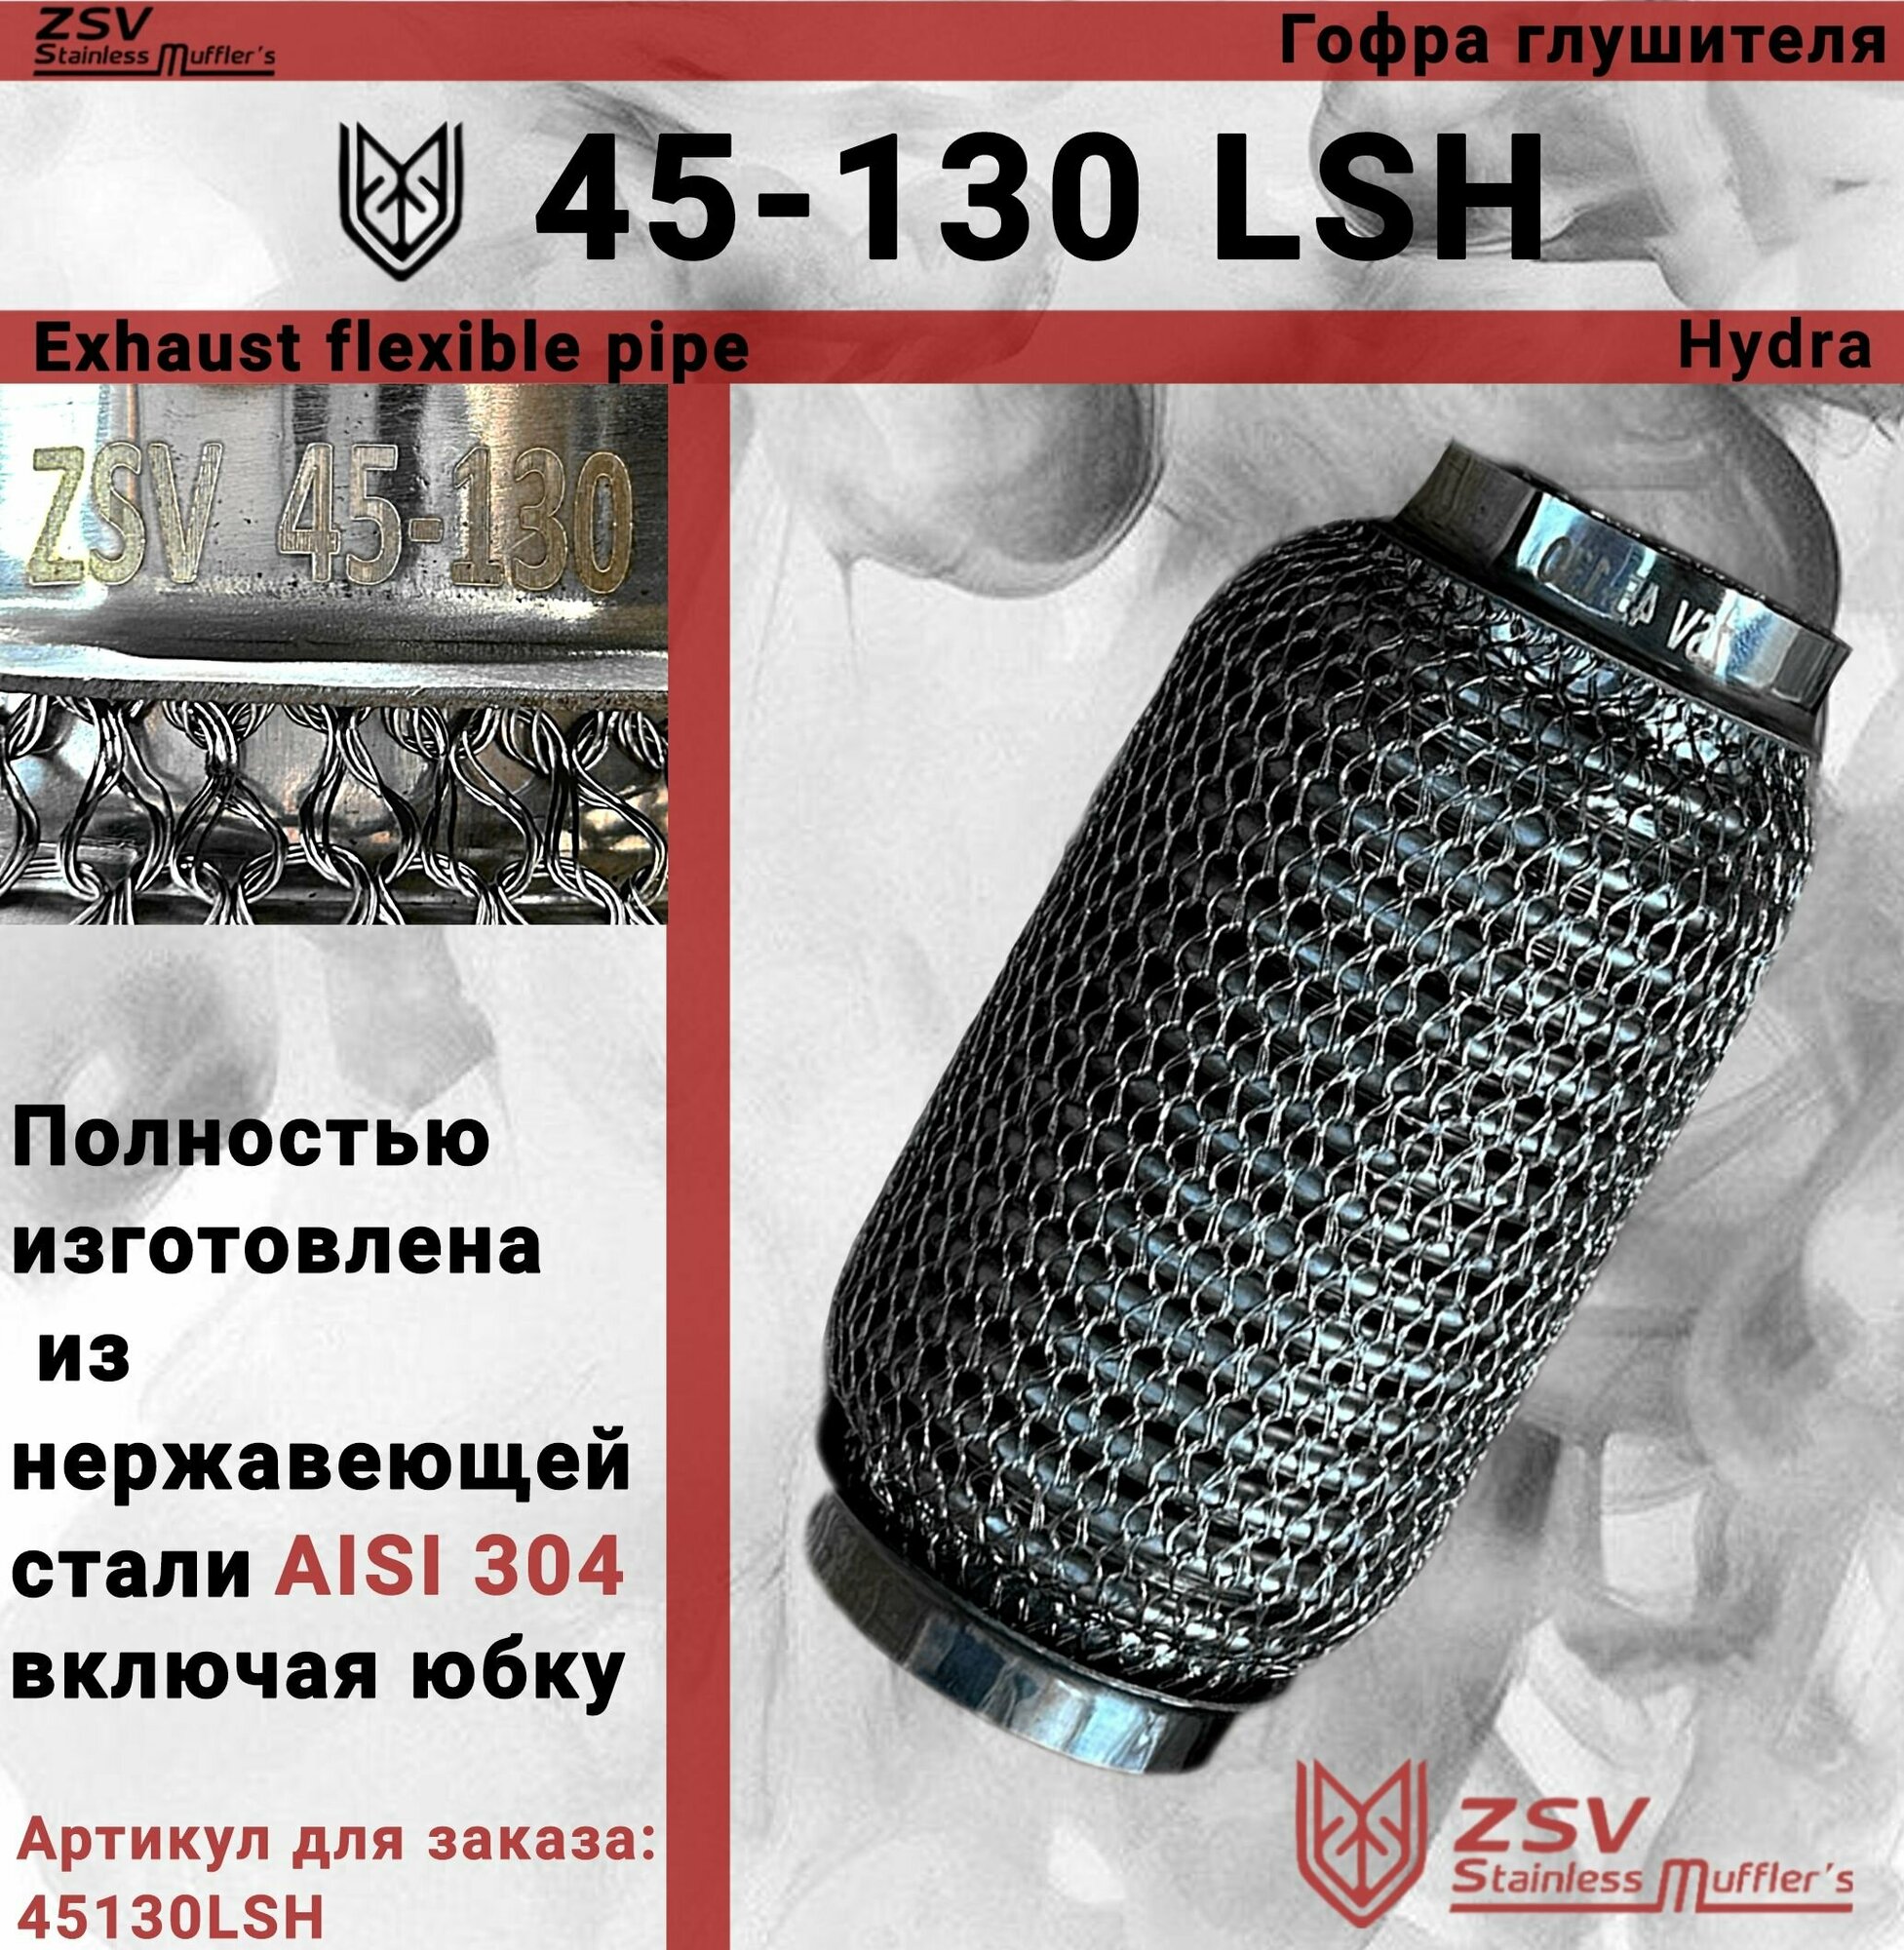 Гофра глушителя Hydra type 45-130 Улучшенная! полностью изготовлена из нержавеющей стали AISI 304